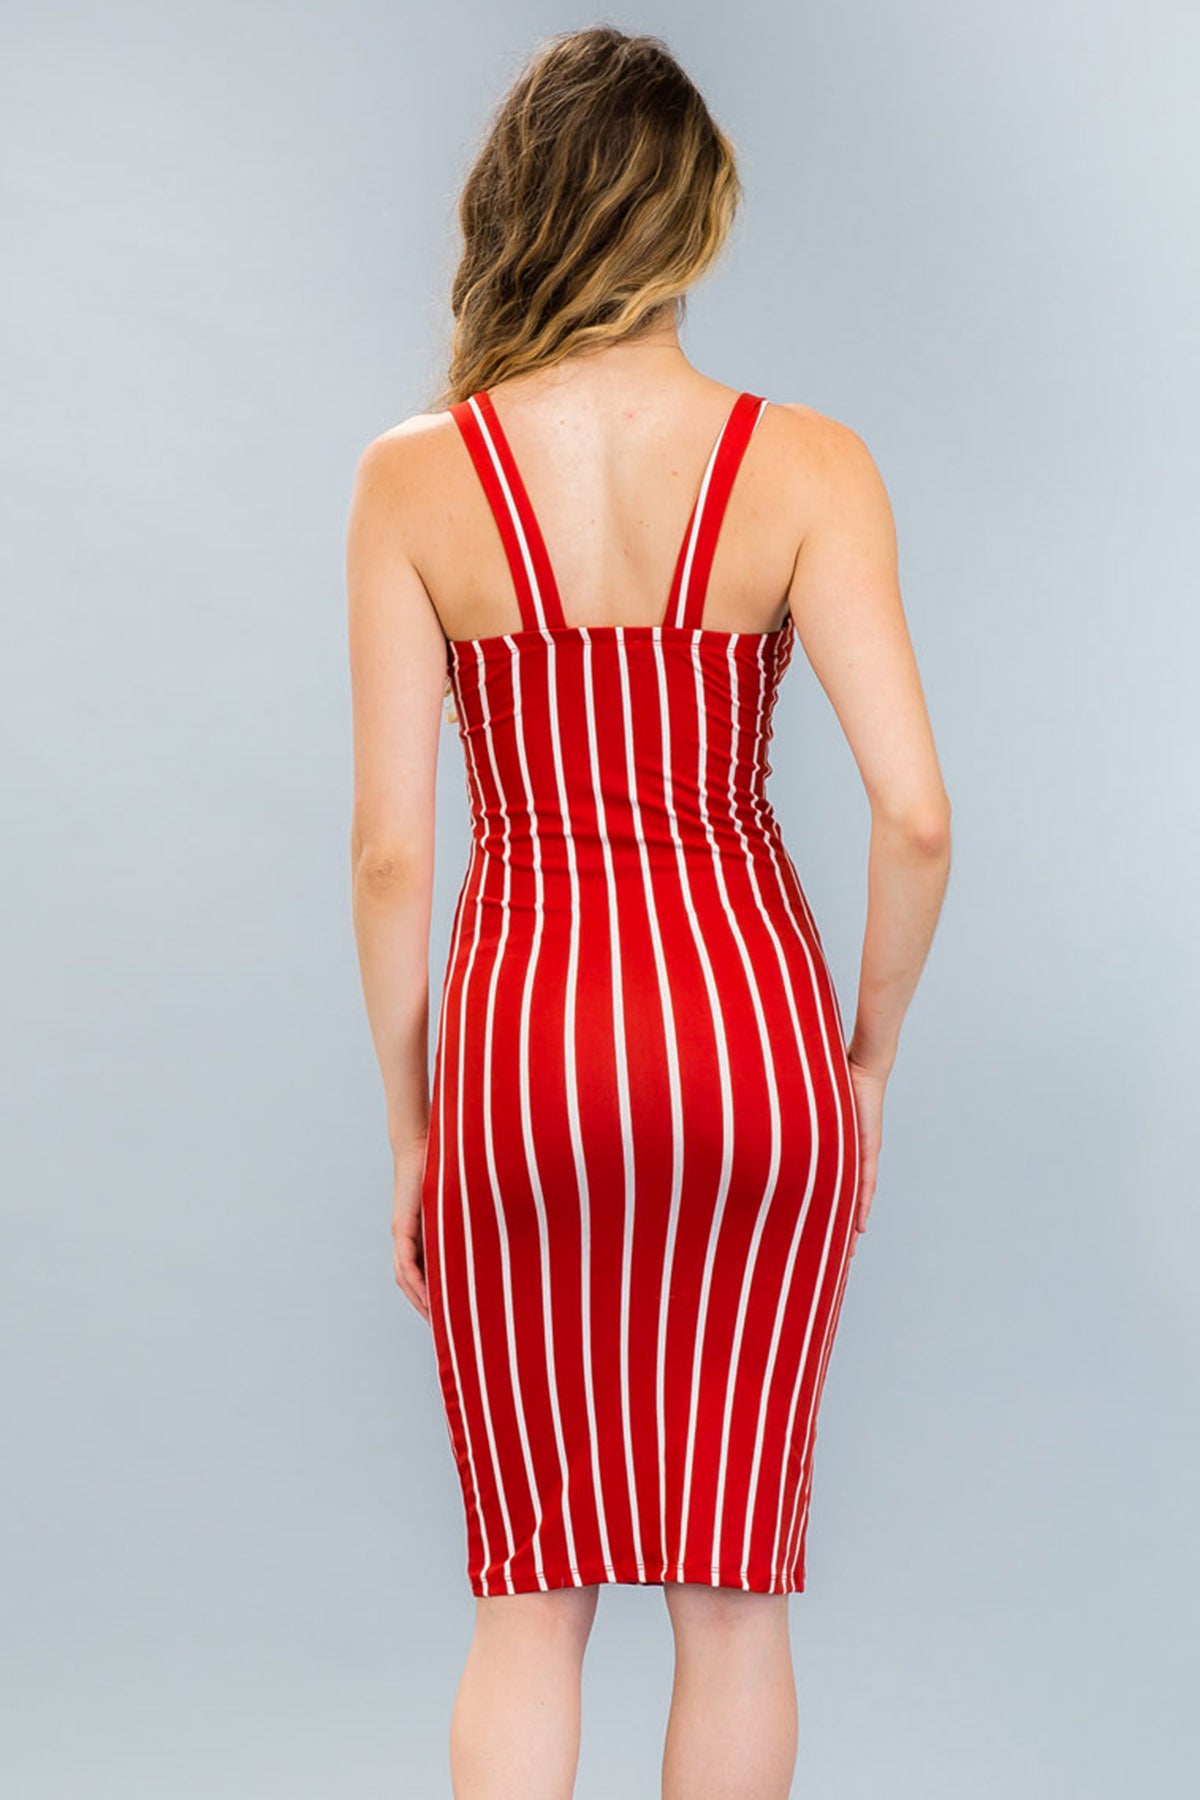 [$3/piece] Striped Tie Front Bodycon Dress